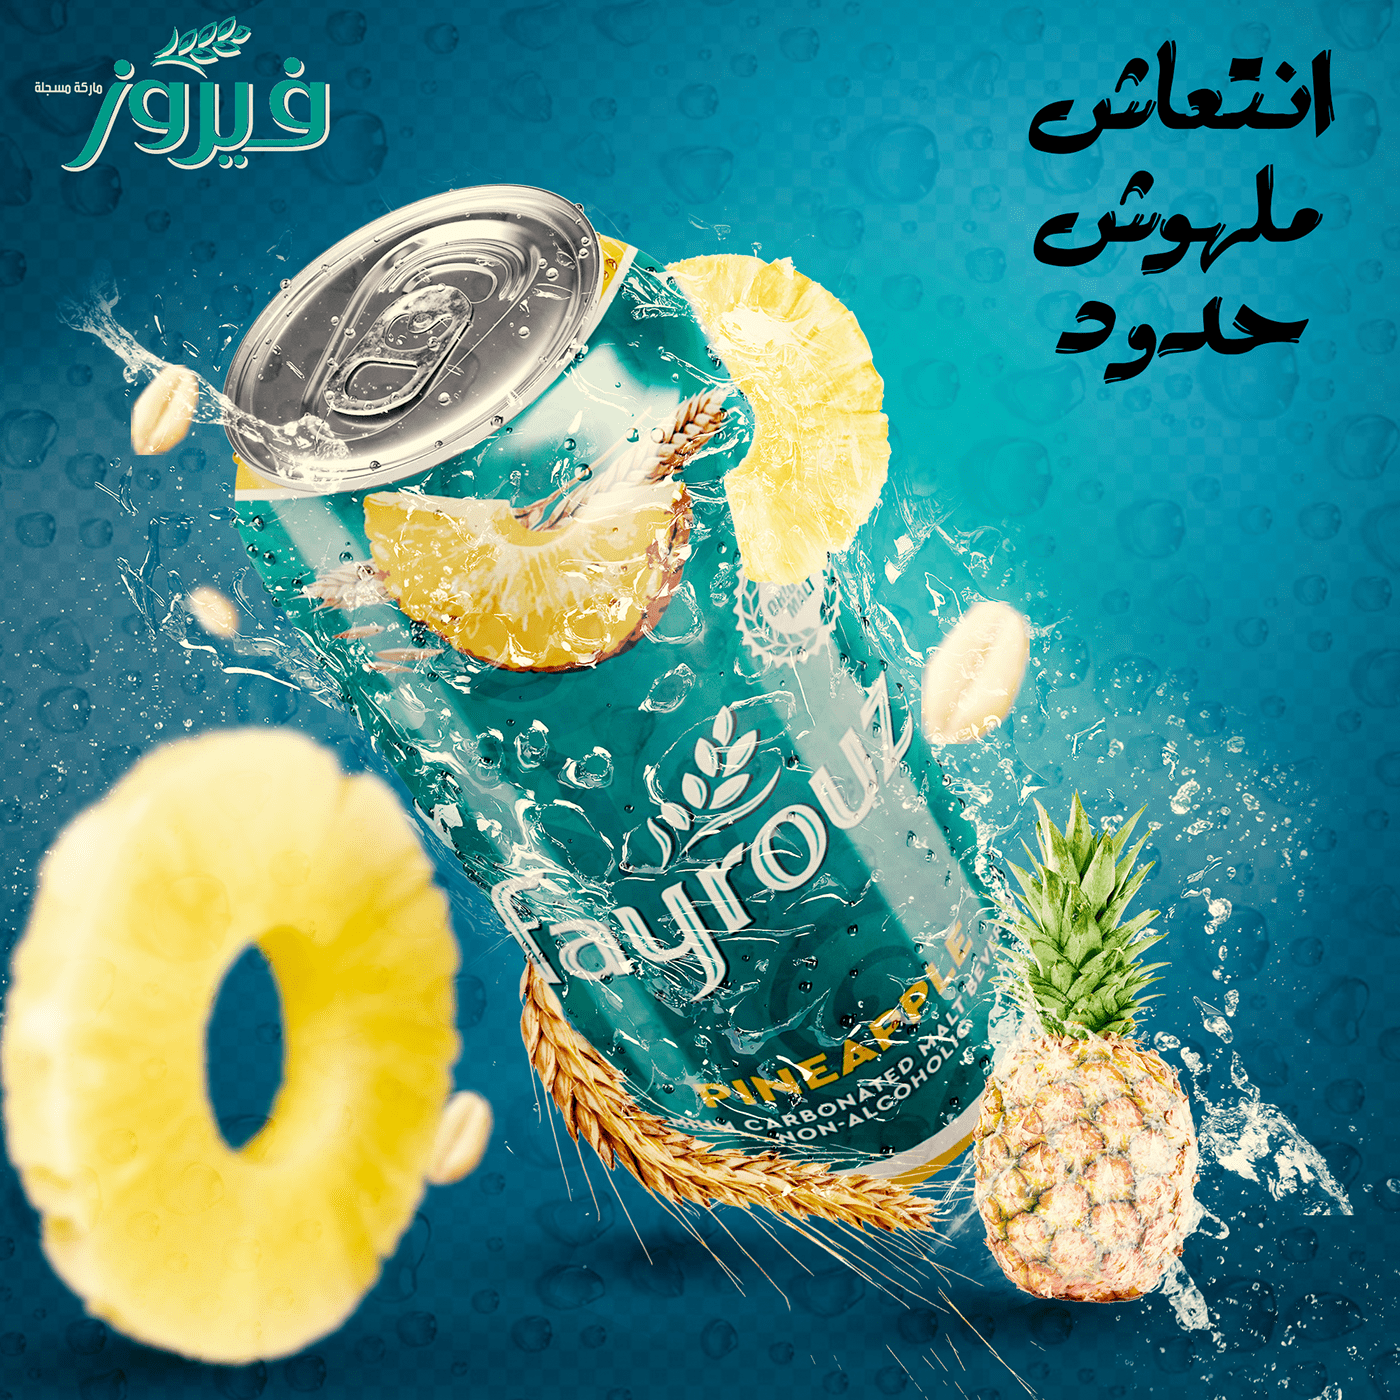 Advertising  egypt Fairuz fayrouz fayrouz drink social media Social media post Socialmedia فيروز